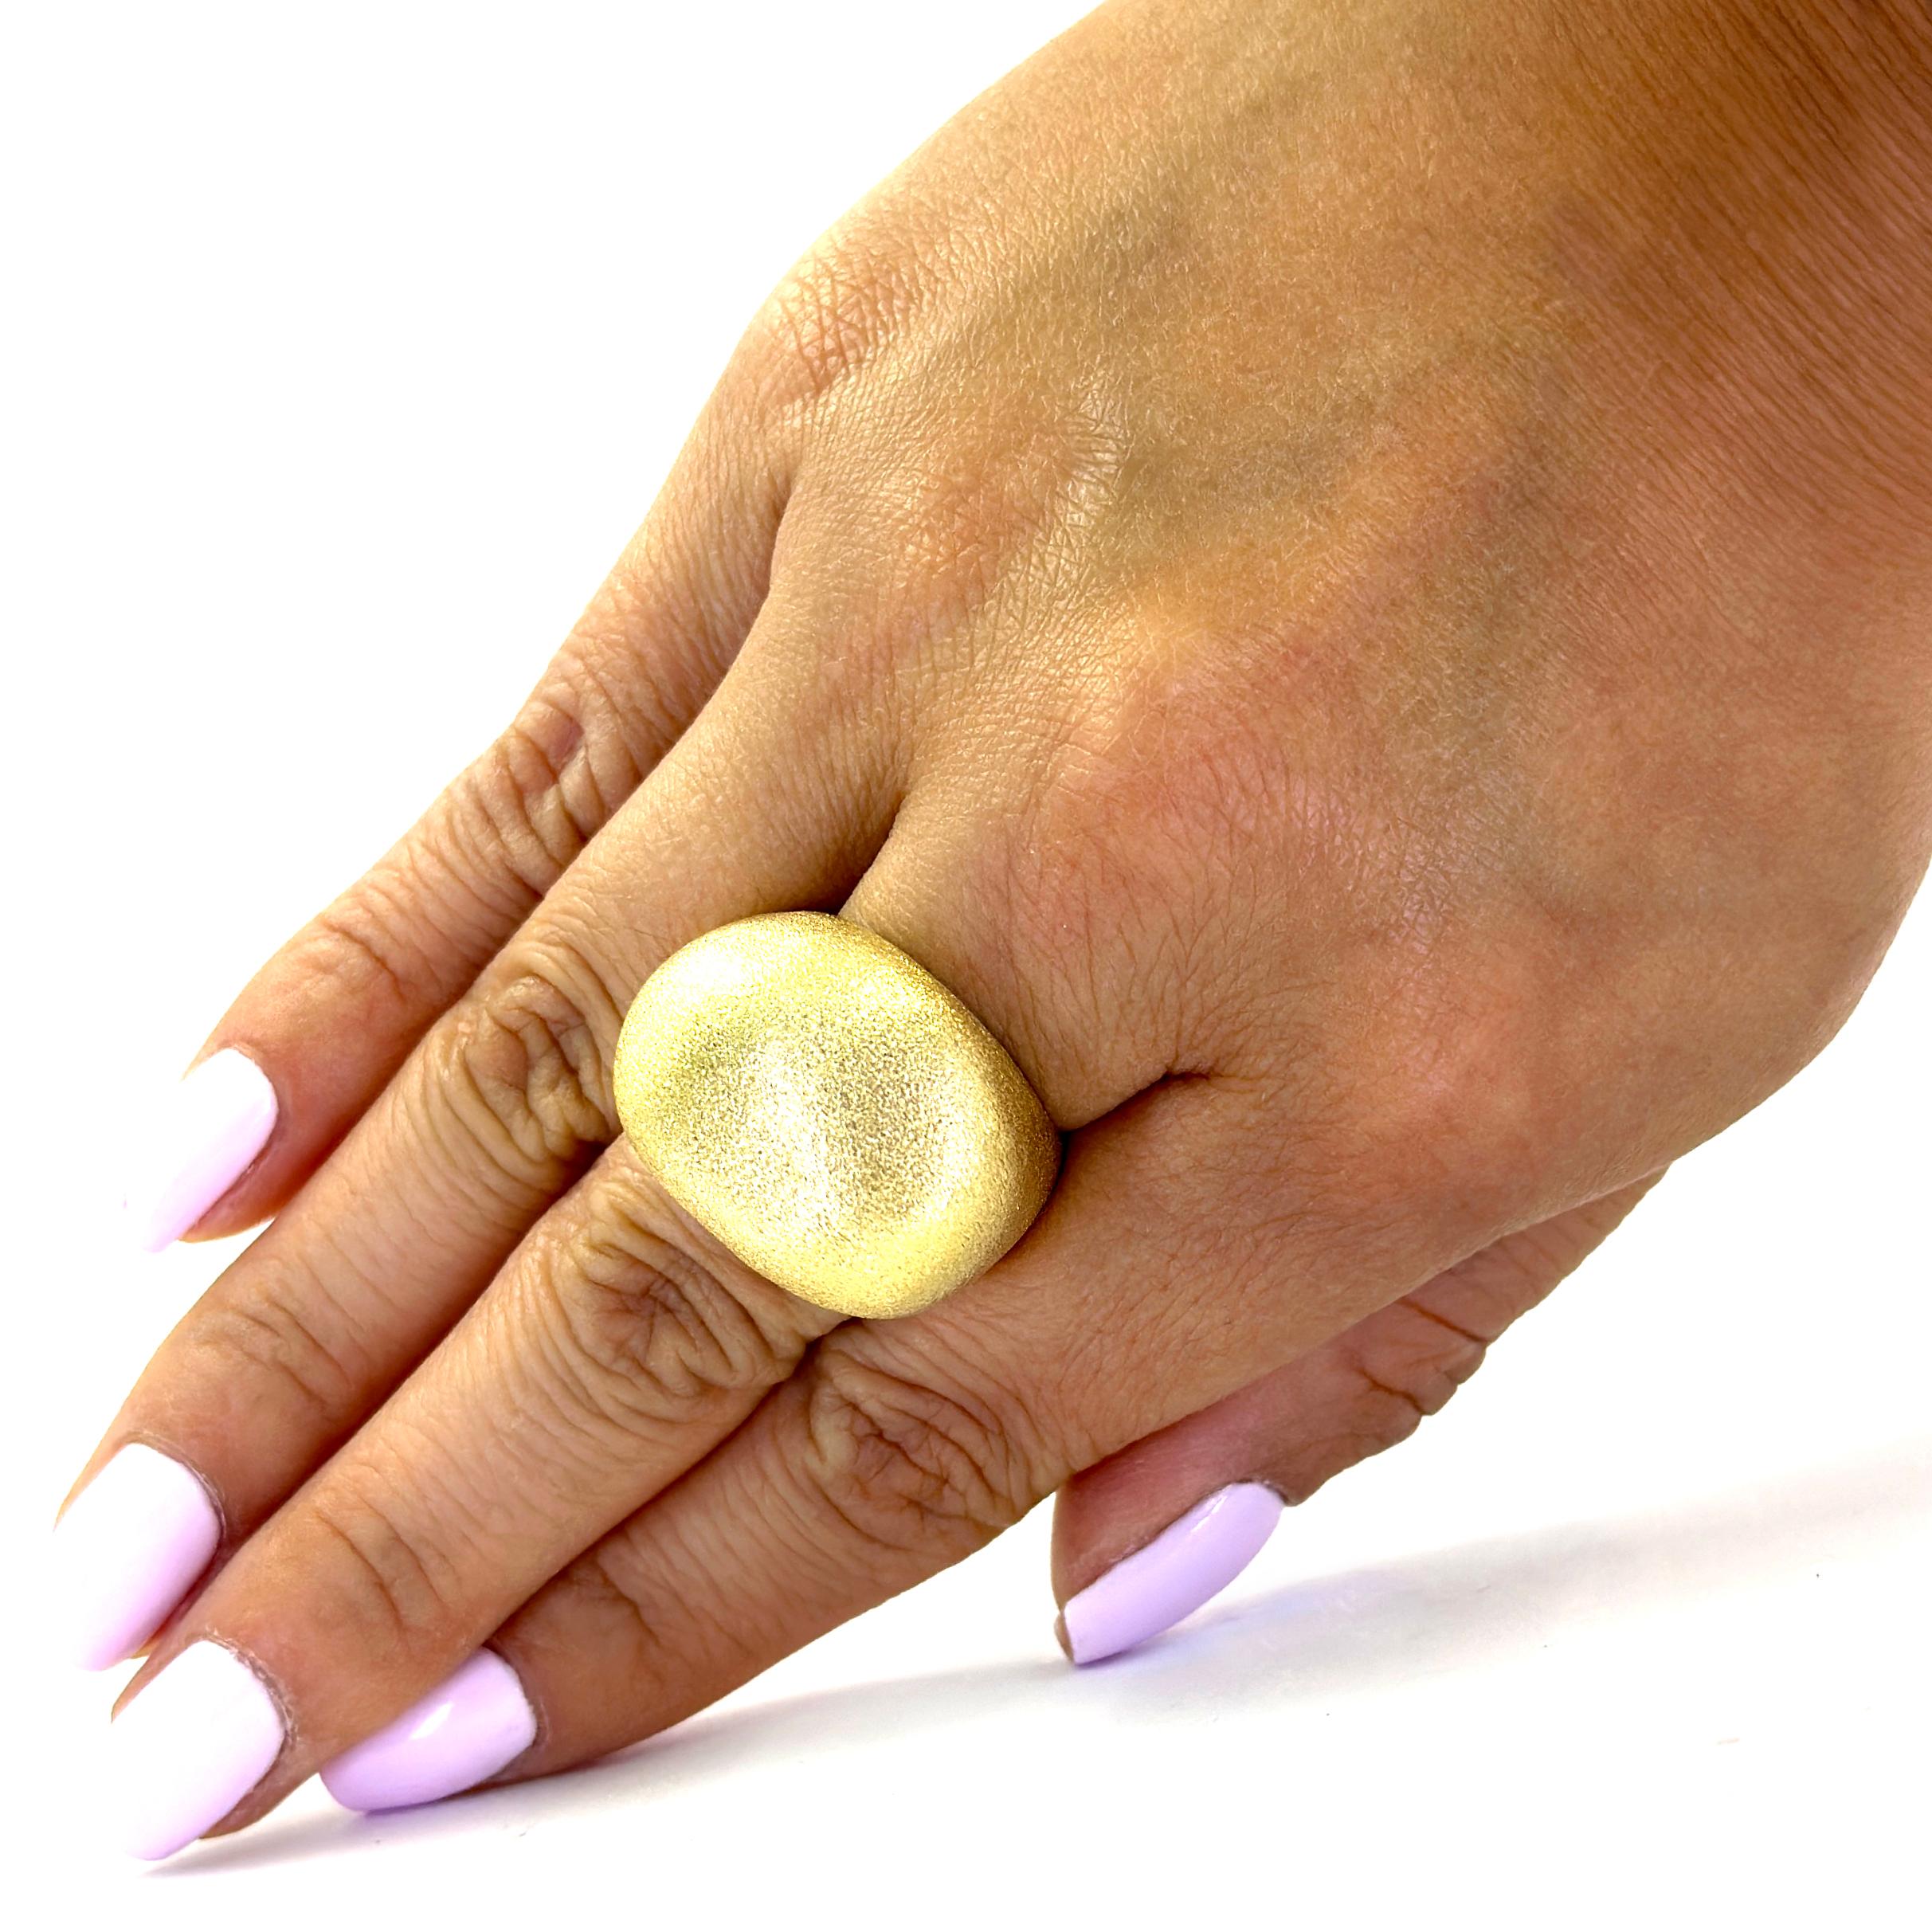 H. Stern 18 Karat Gelbgold Golden Stones Collection'S Dome Ring mit einer strukturierten Oberfläche. Aktuelle MSRP über $5.000! Fingergröße 7. Sizing Service enthalten auf Anfrage vor der Auslieferung. Das fertige Gewicht beträgt 25,7 Gramm.